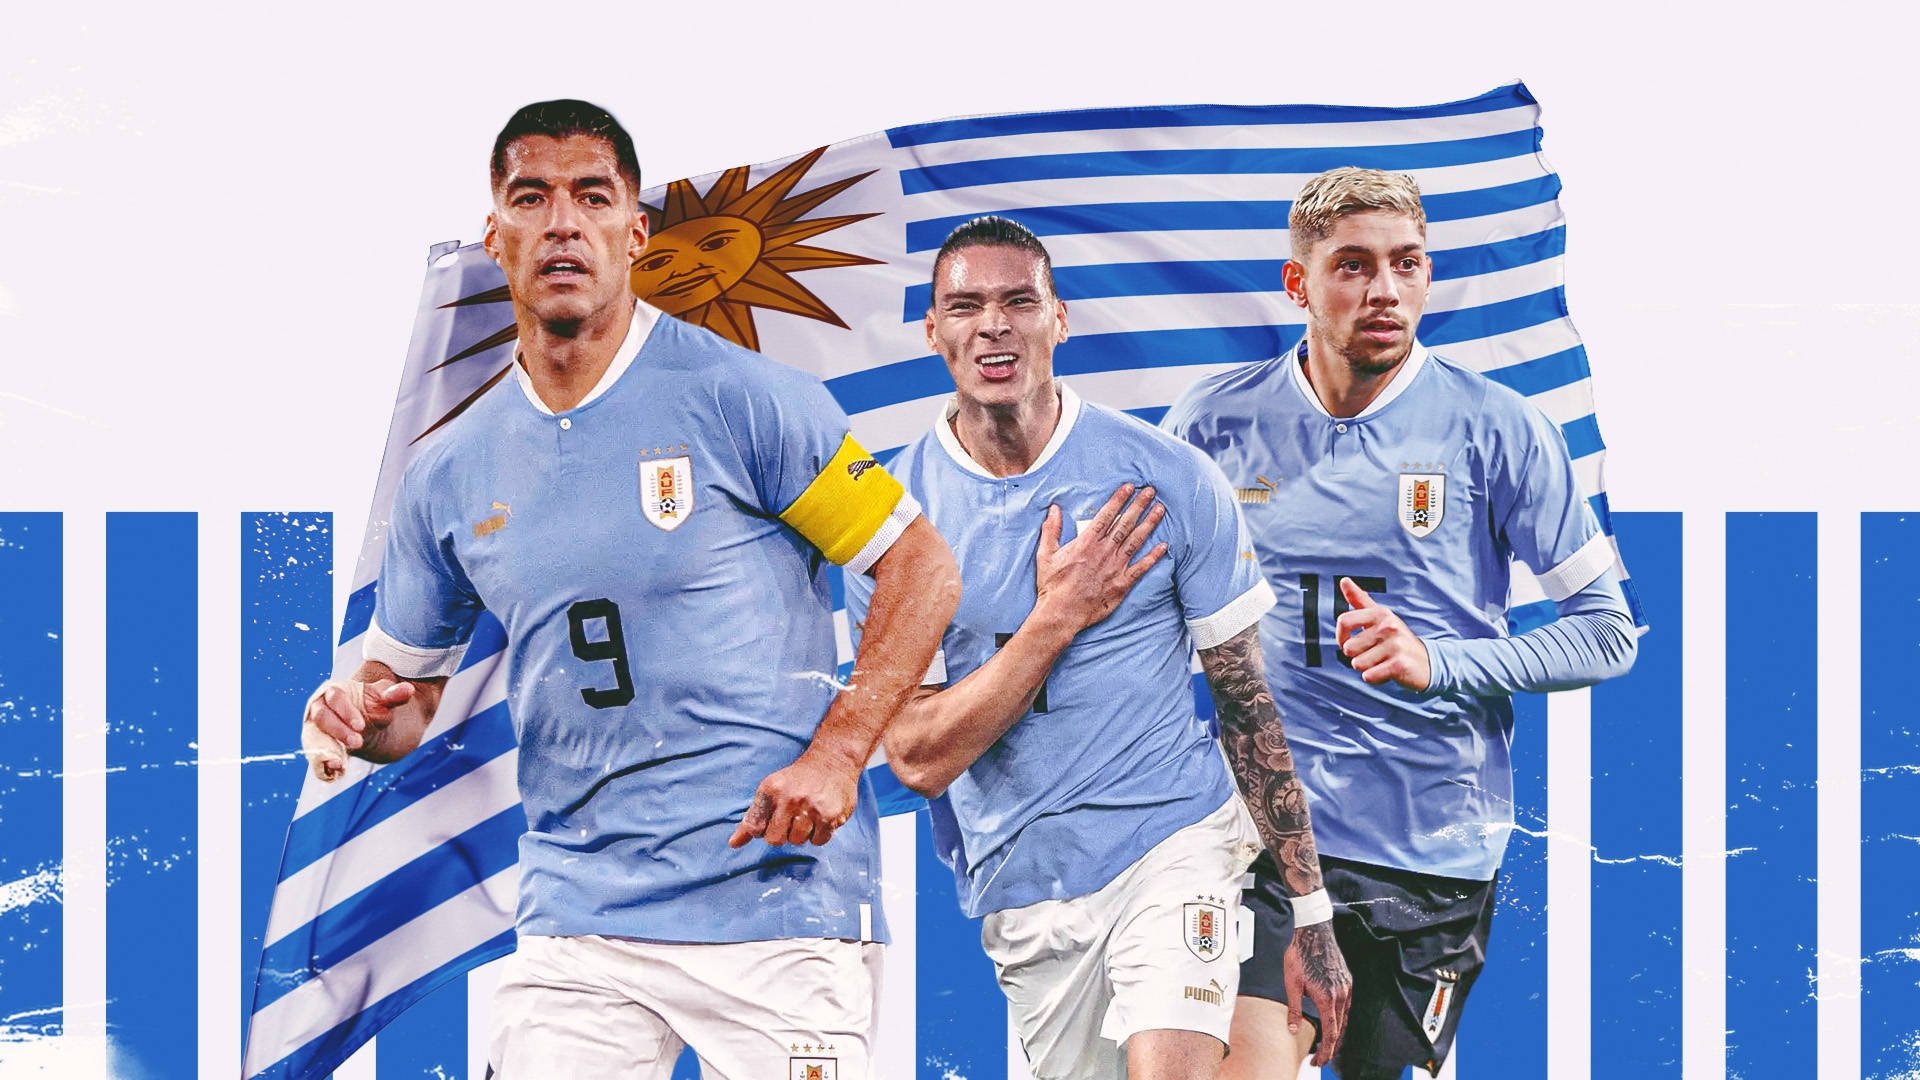 Uruguaynationalmannschaftsflagge Wallpaper